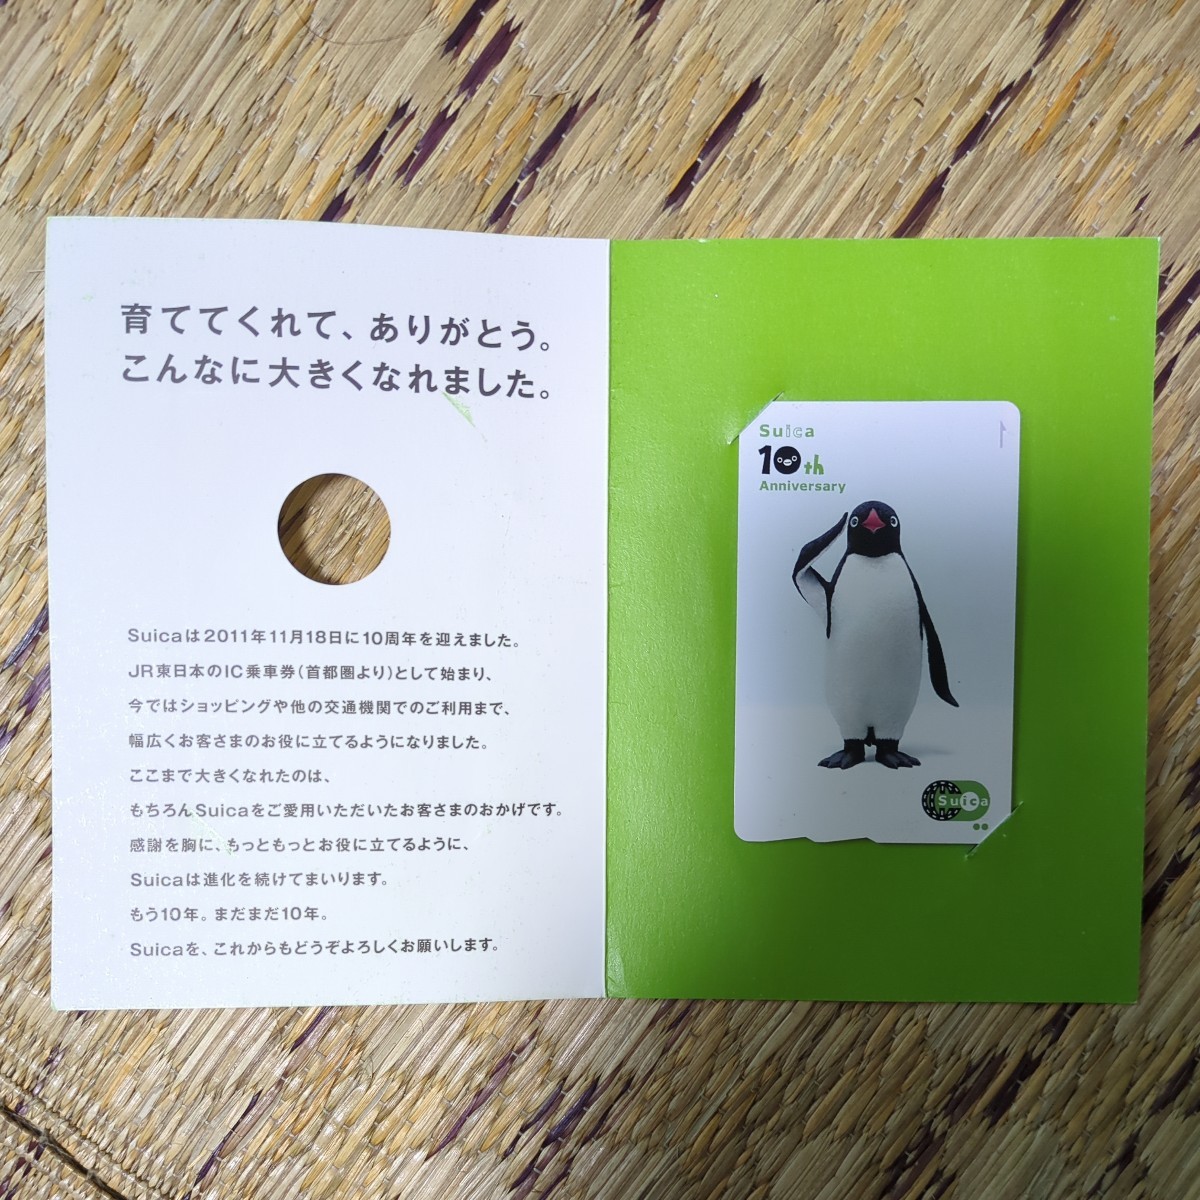 Yahoo!オークション -「10周年記念suica」(プリペイドカード) の落札